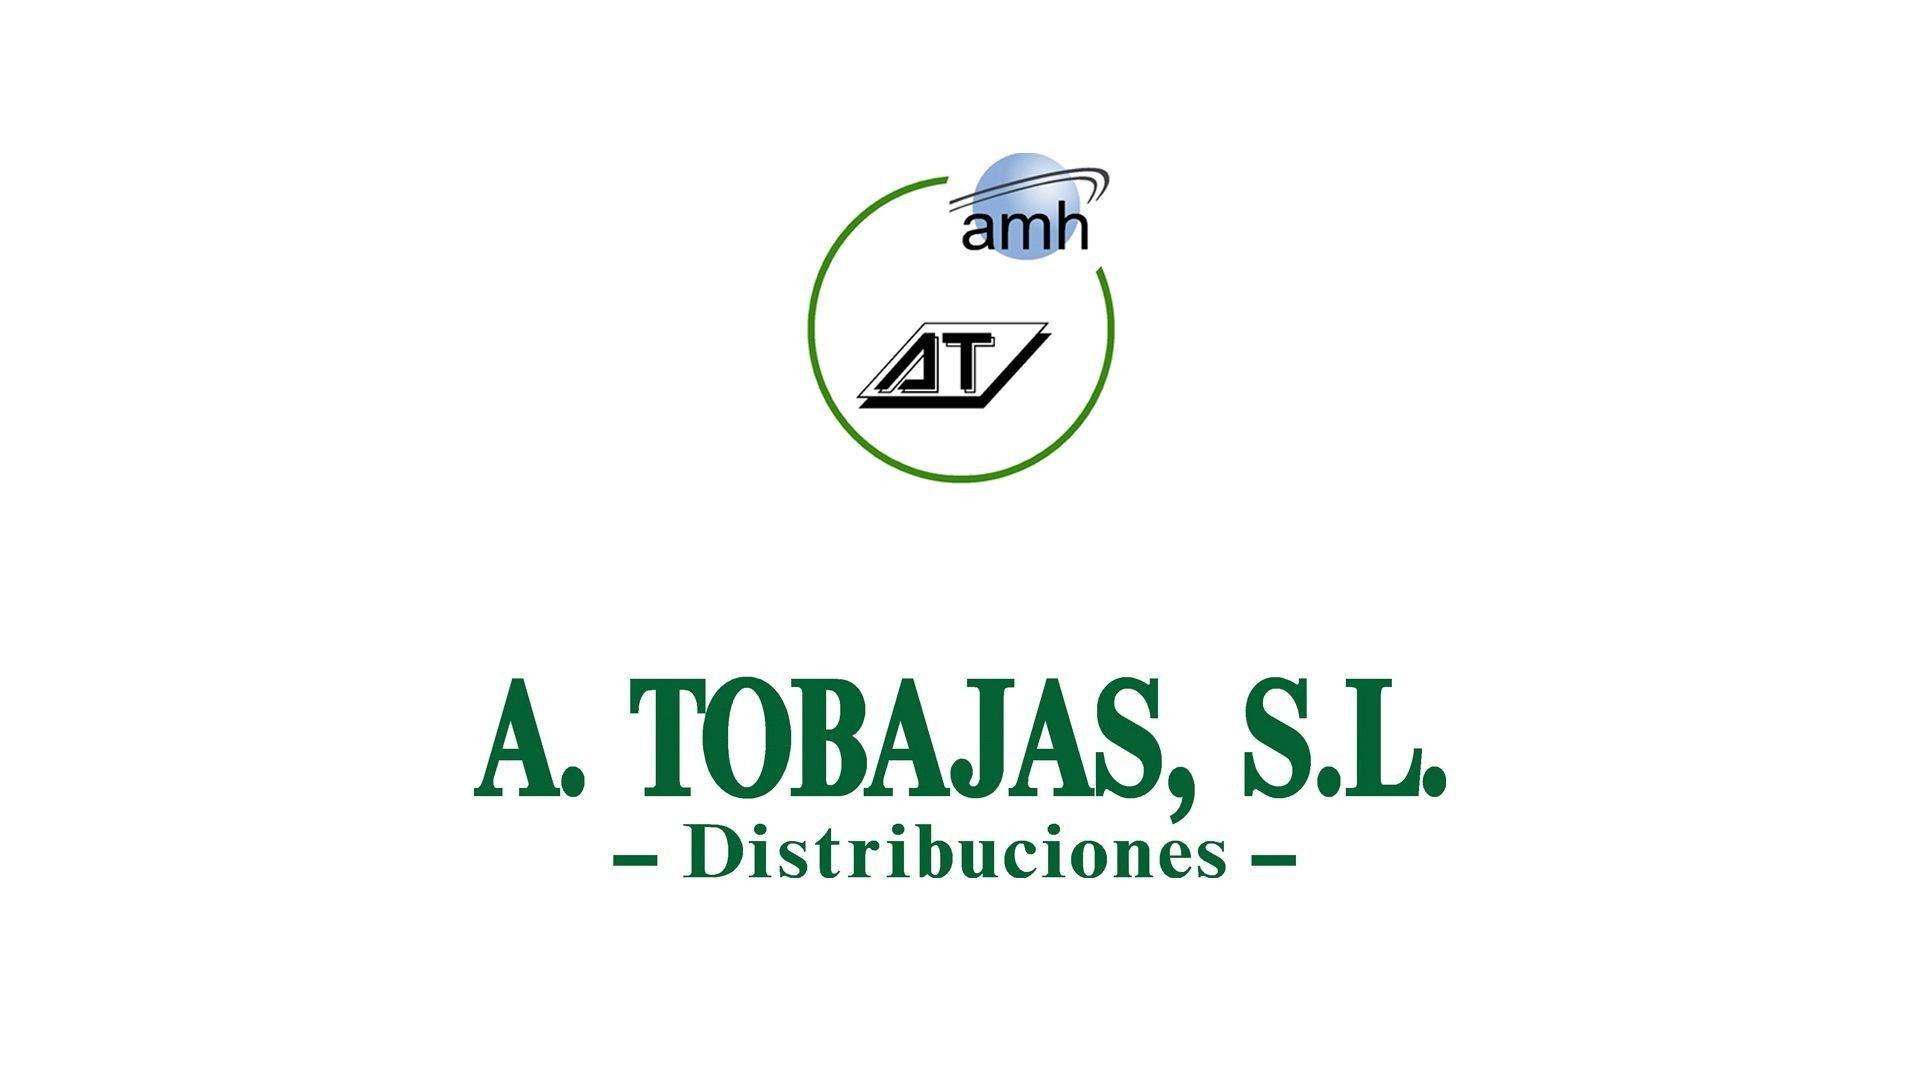 Distribución de alimentos y bebidas para hostelería en Huelva